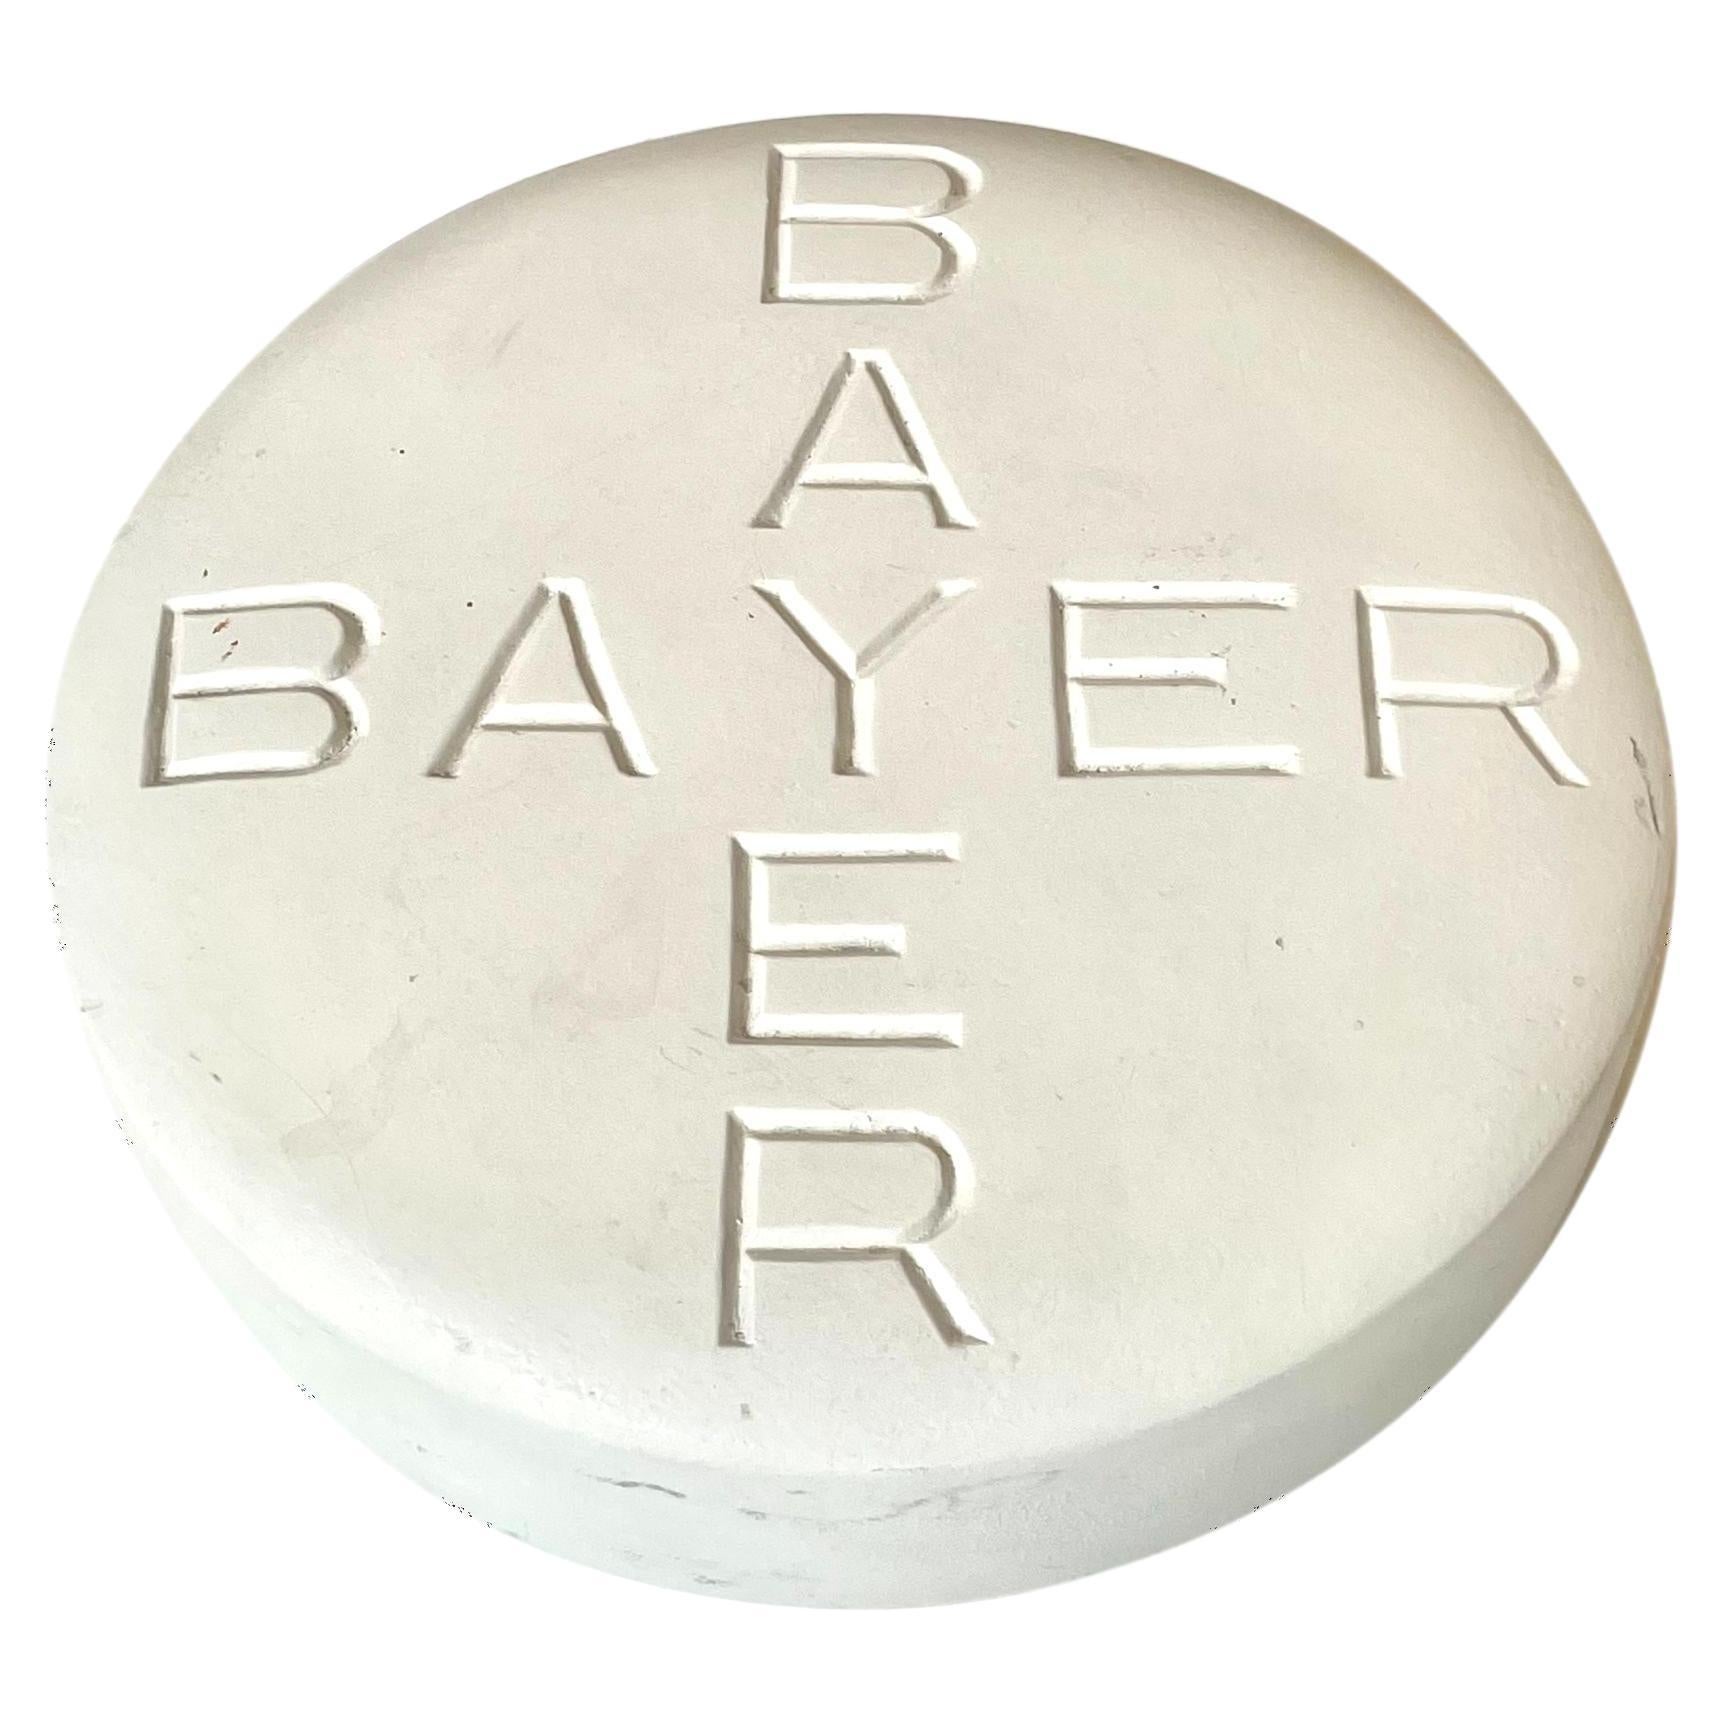 Giant Bayer Pill Pop Art